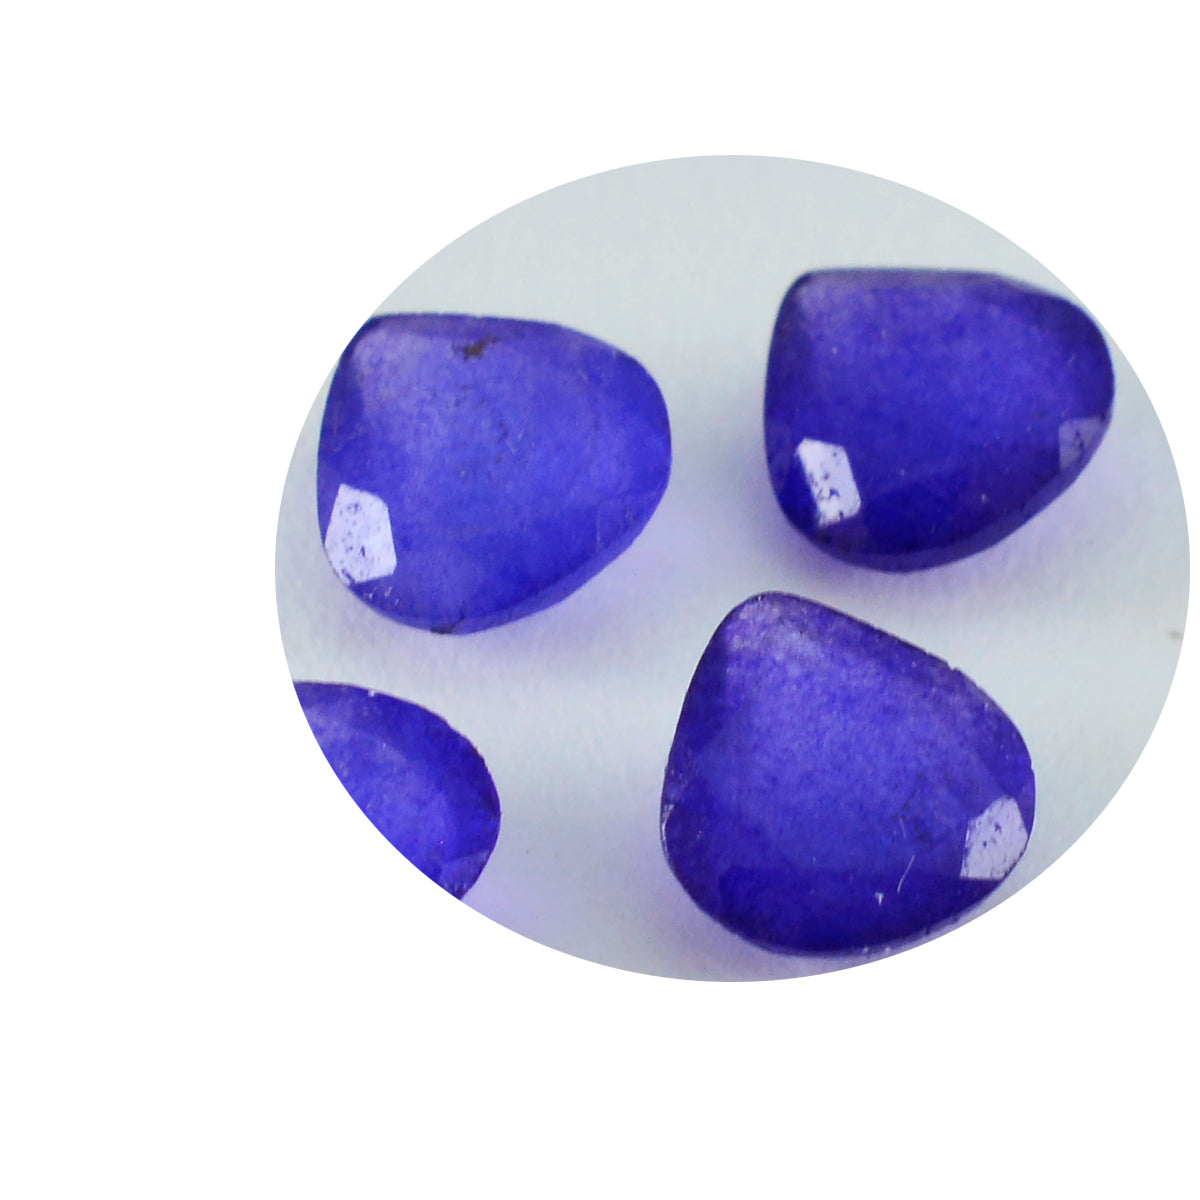 Riyogems 1 Stück echter blauer Jaspis, facettiert, 11 x 11 mm, Herzform, Edelstein von hervorragender Qualität